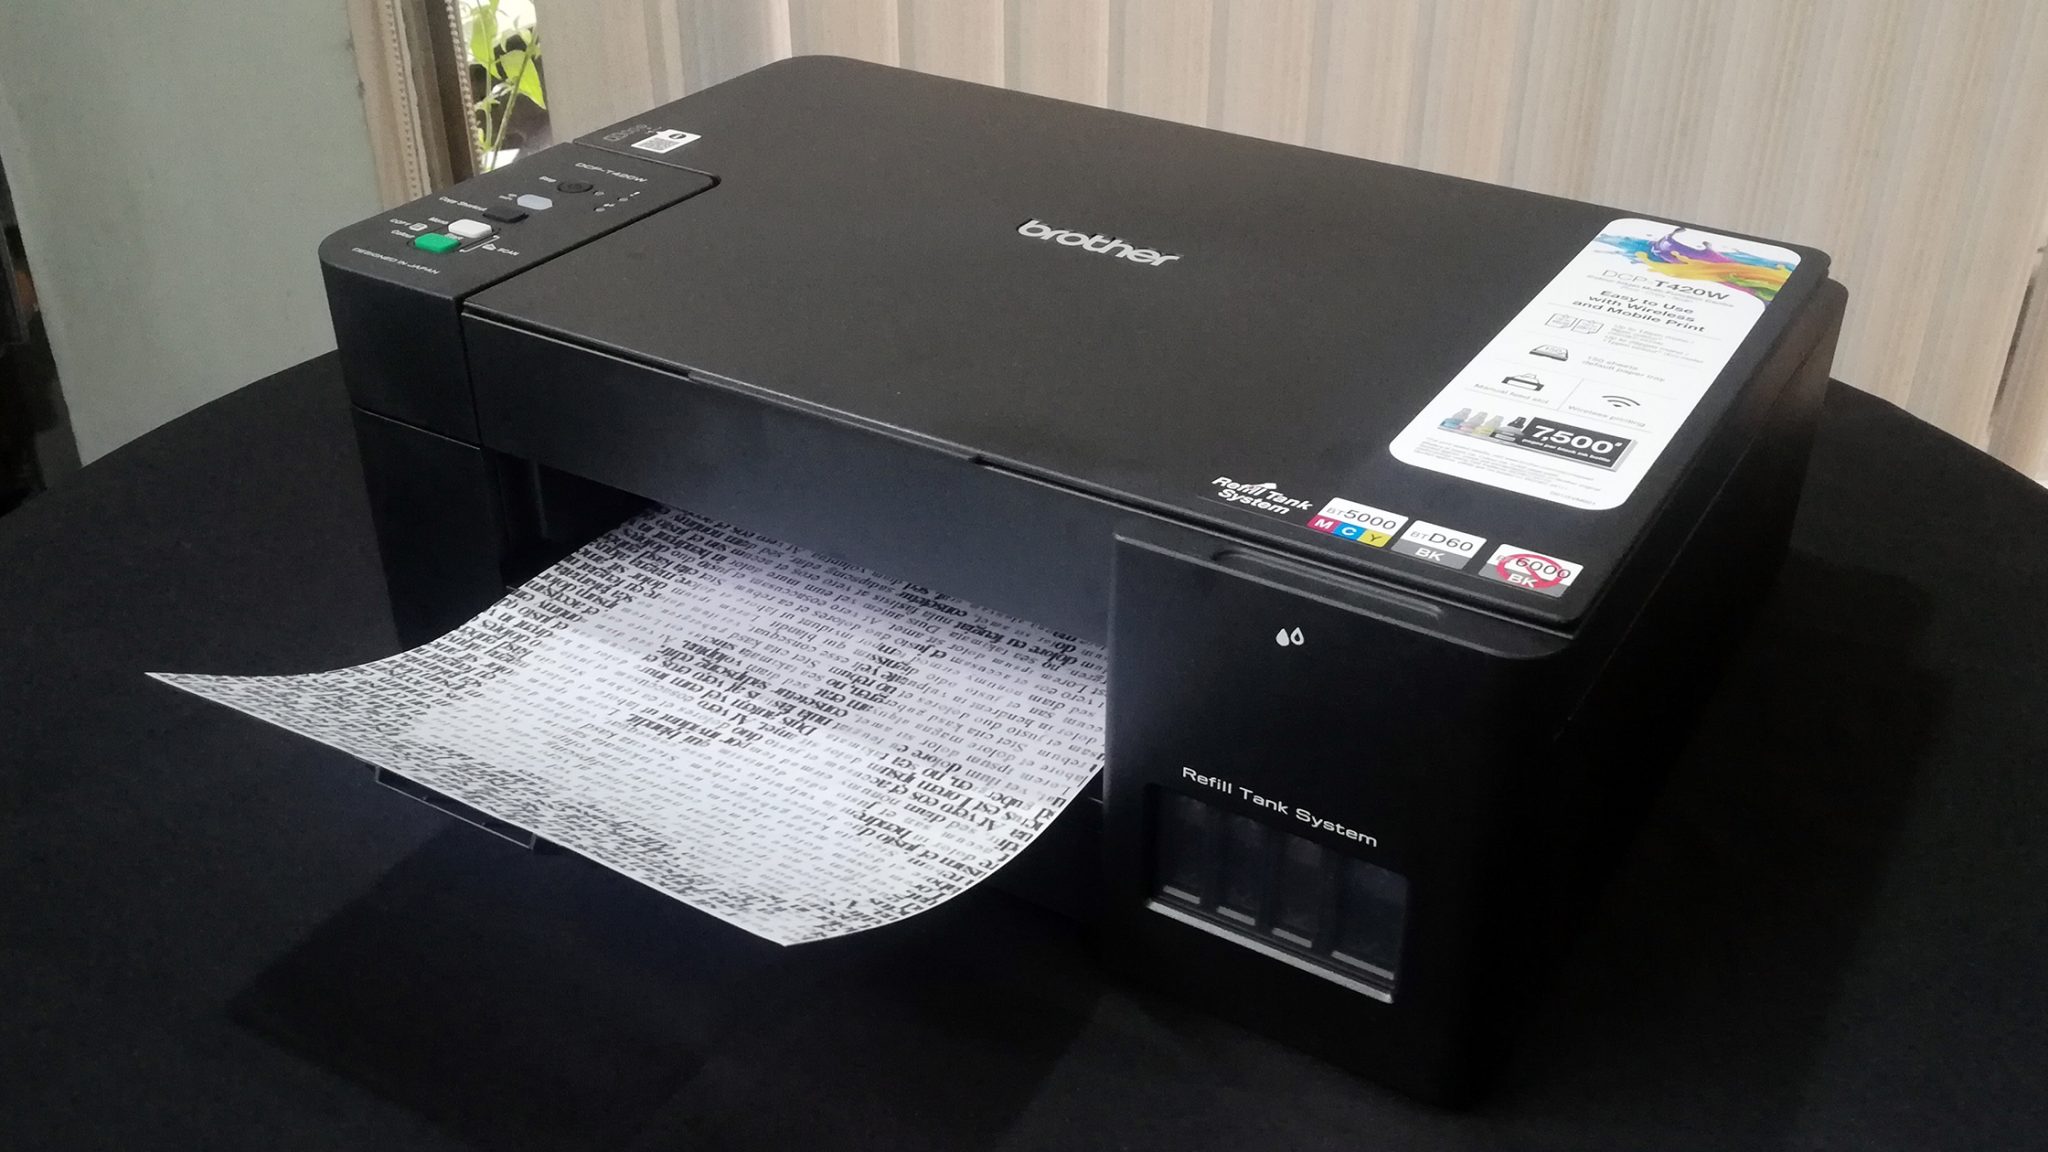 Как установить драйвер на принтер brother dcp t420w